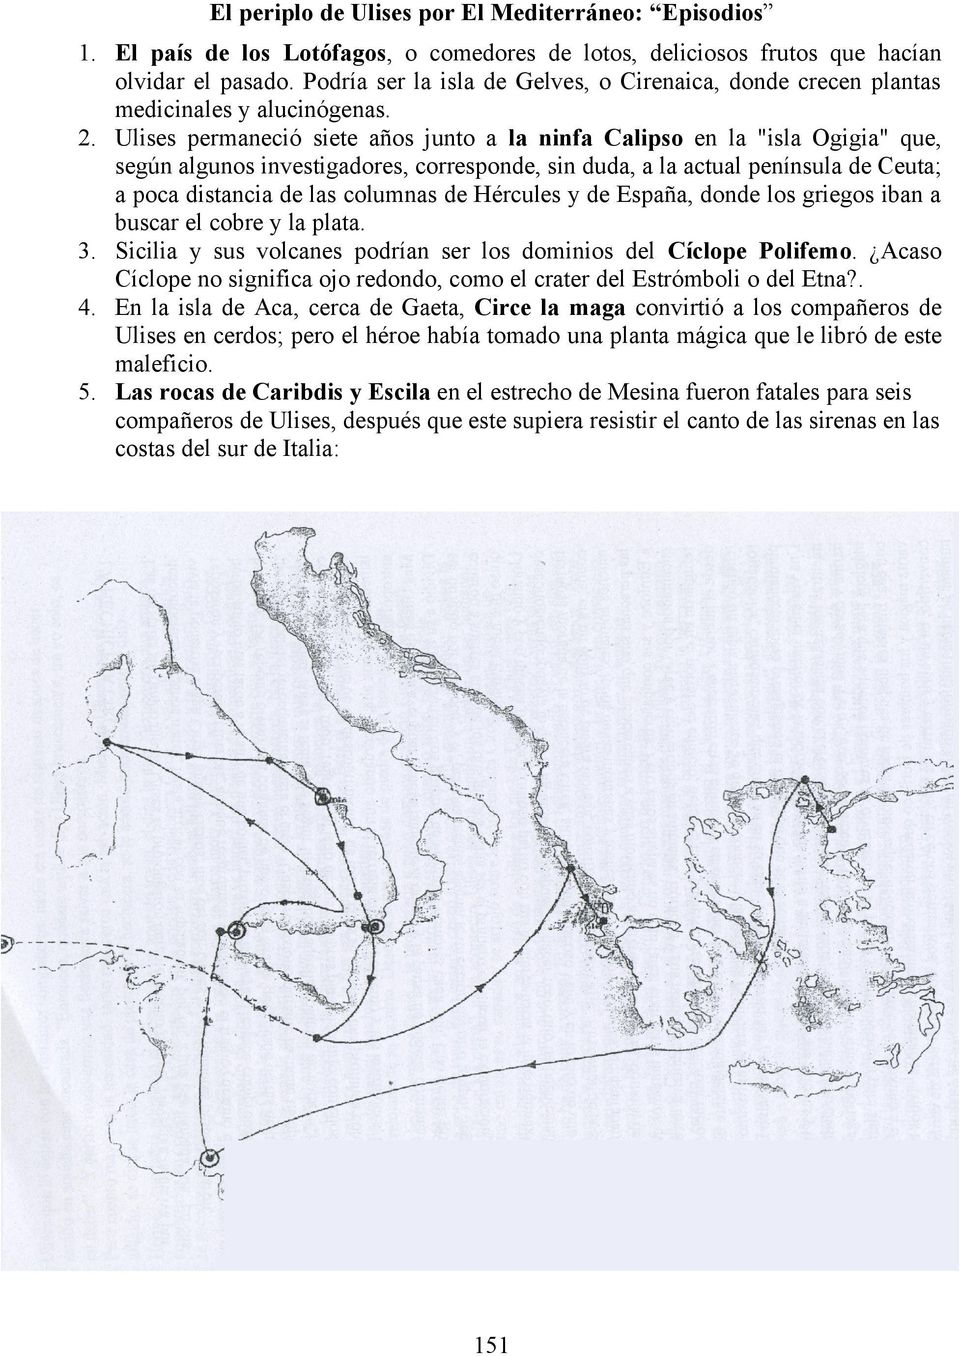 Ulises permaneció siete años junto a la ninfa Calipso en la "isla Ogigia" que, según algunos investigadores, corresponde, sin duda, a la actual península de Ceuta; a poca distancia de las columnas de